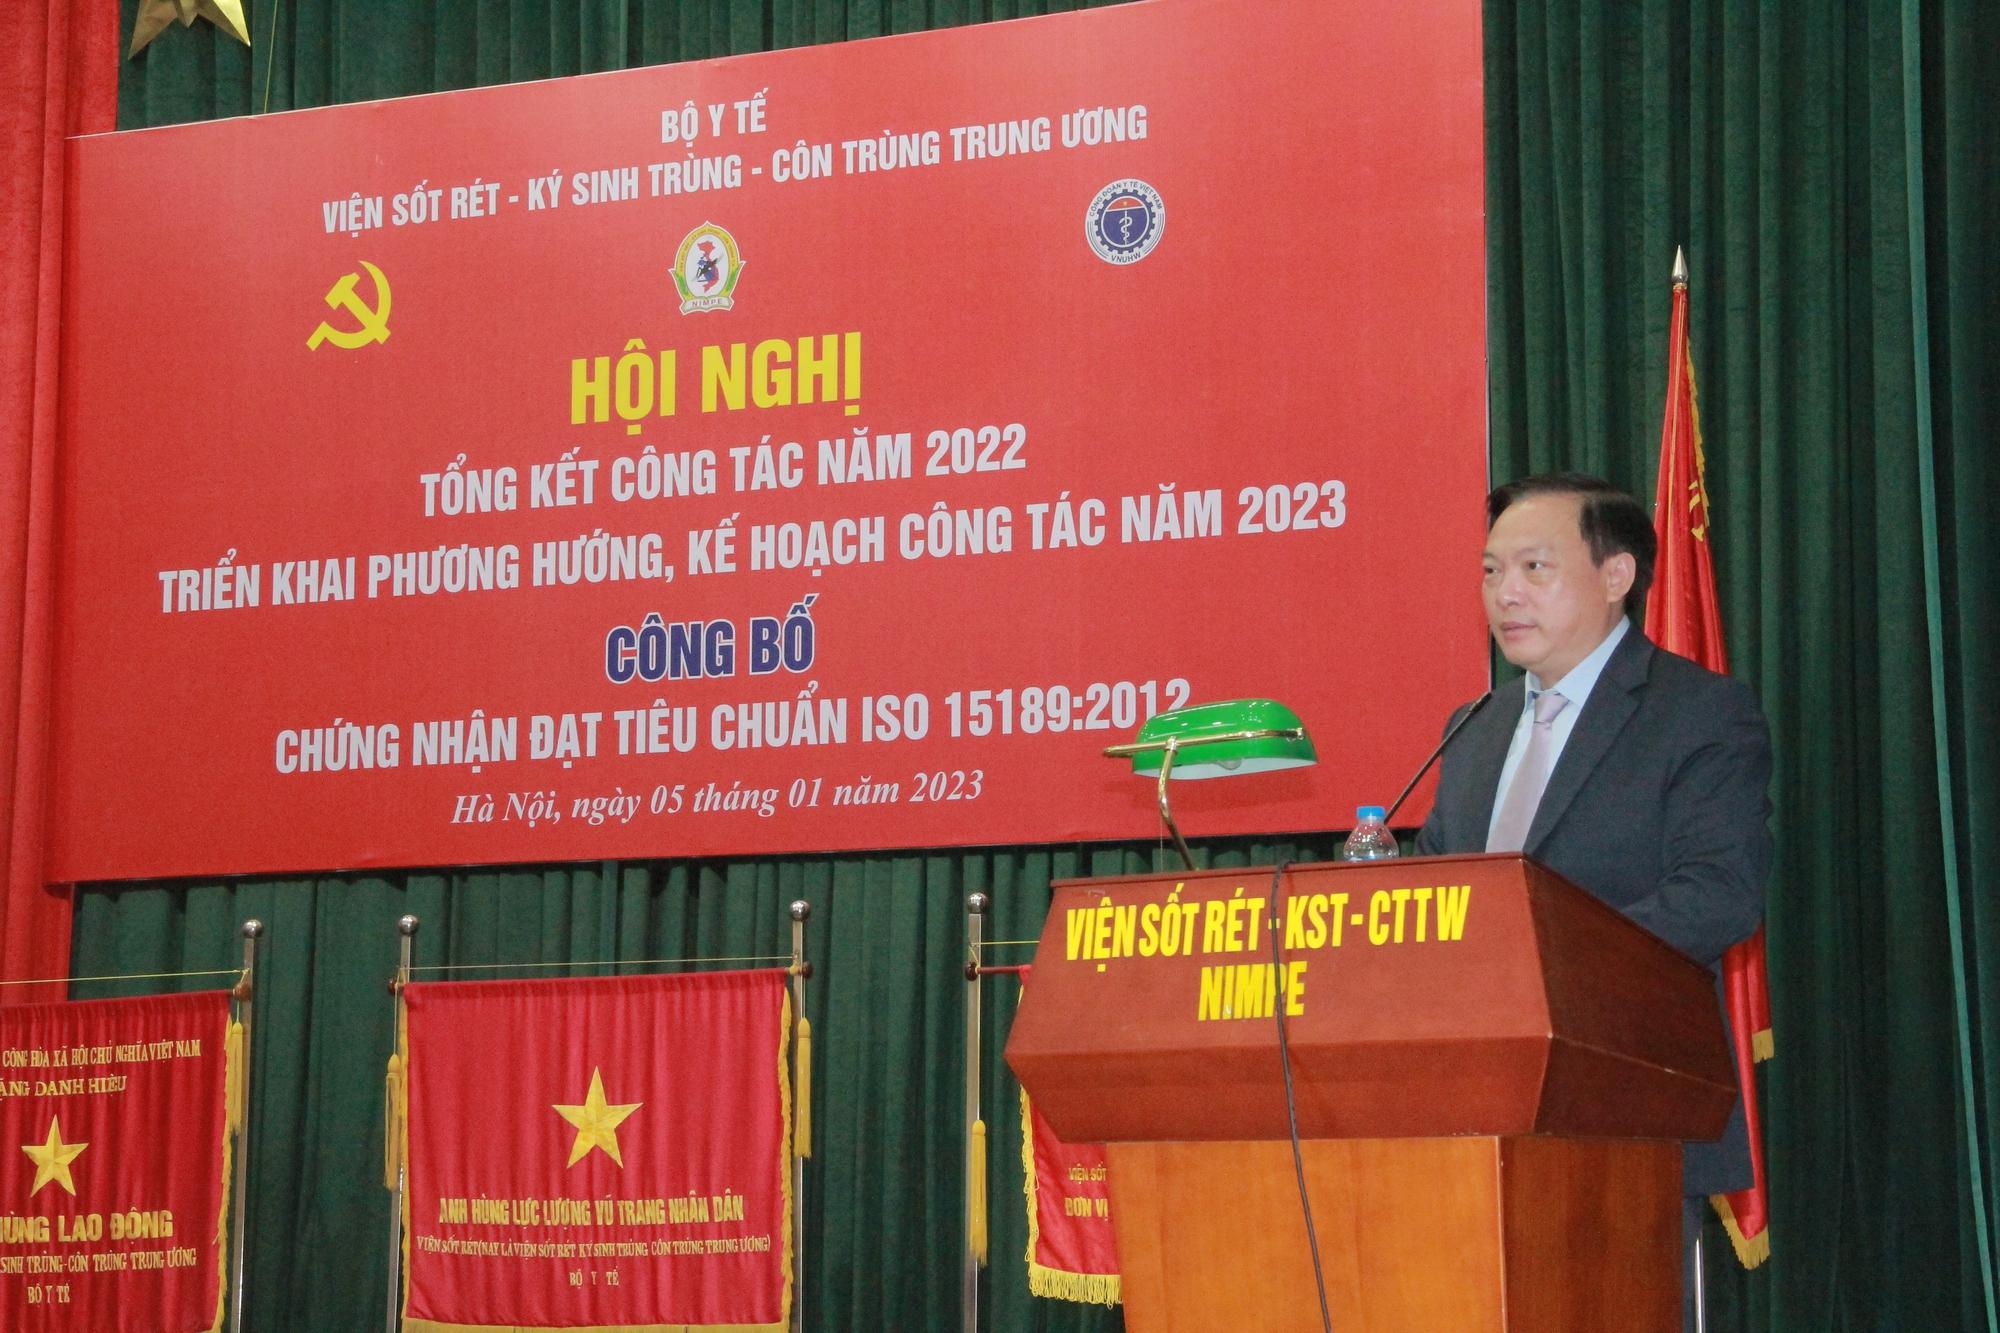 Dự kiến Việt Nam có 47 tỉnh, thành phố công bố loại trừ sốt rét vào cuối năm 2023 - Ảnh 1.